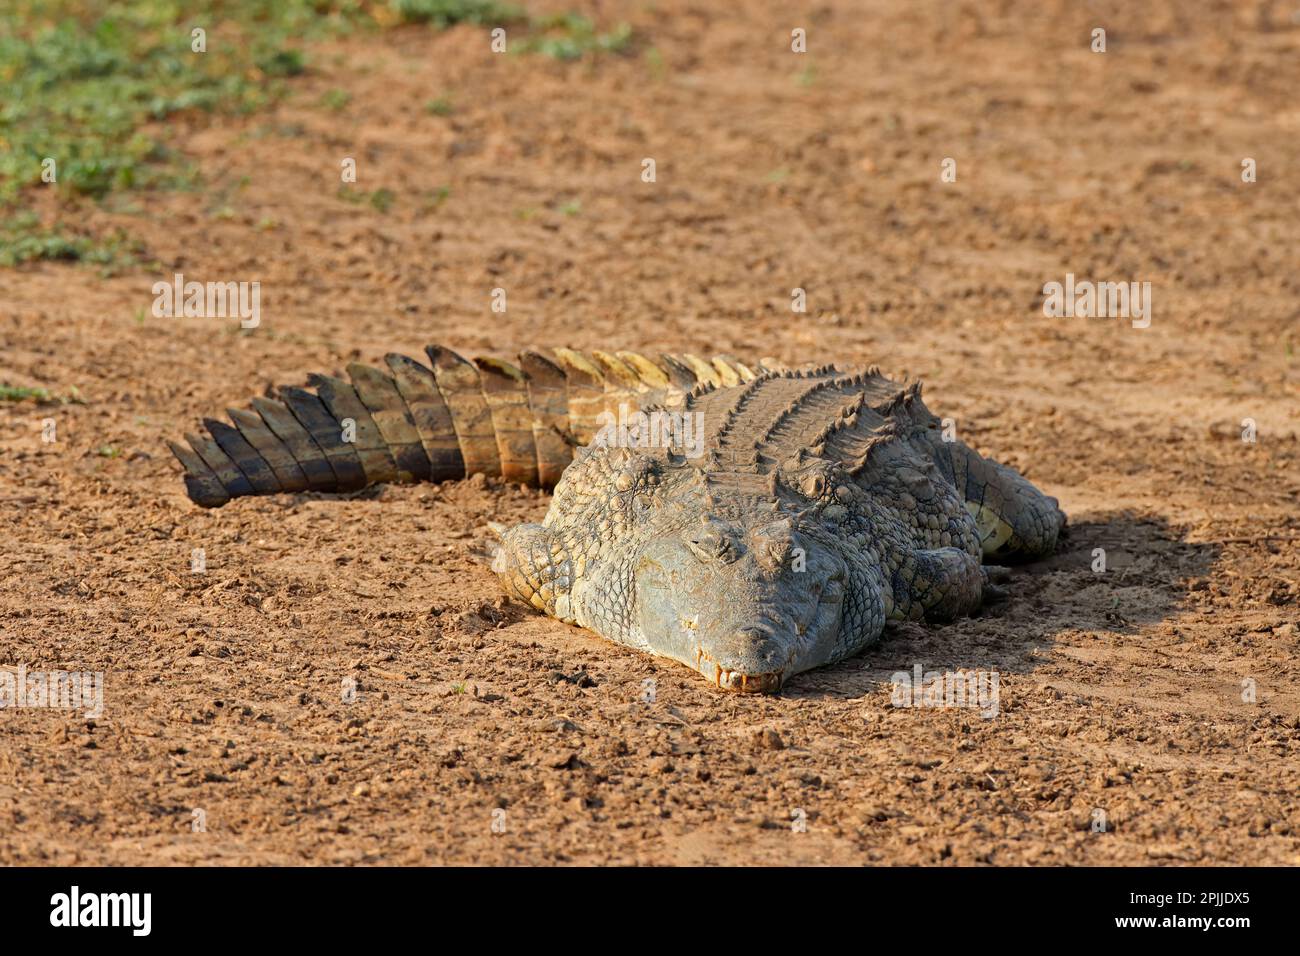 Un cocodrilo del Nilo (Crocodylus niloticus), peregrino en el Parque Nacional Kruger, Sudáfrica Foto de stock